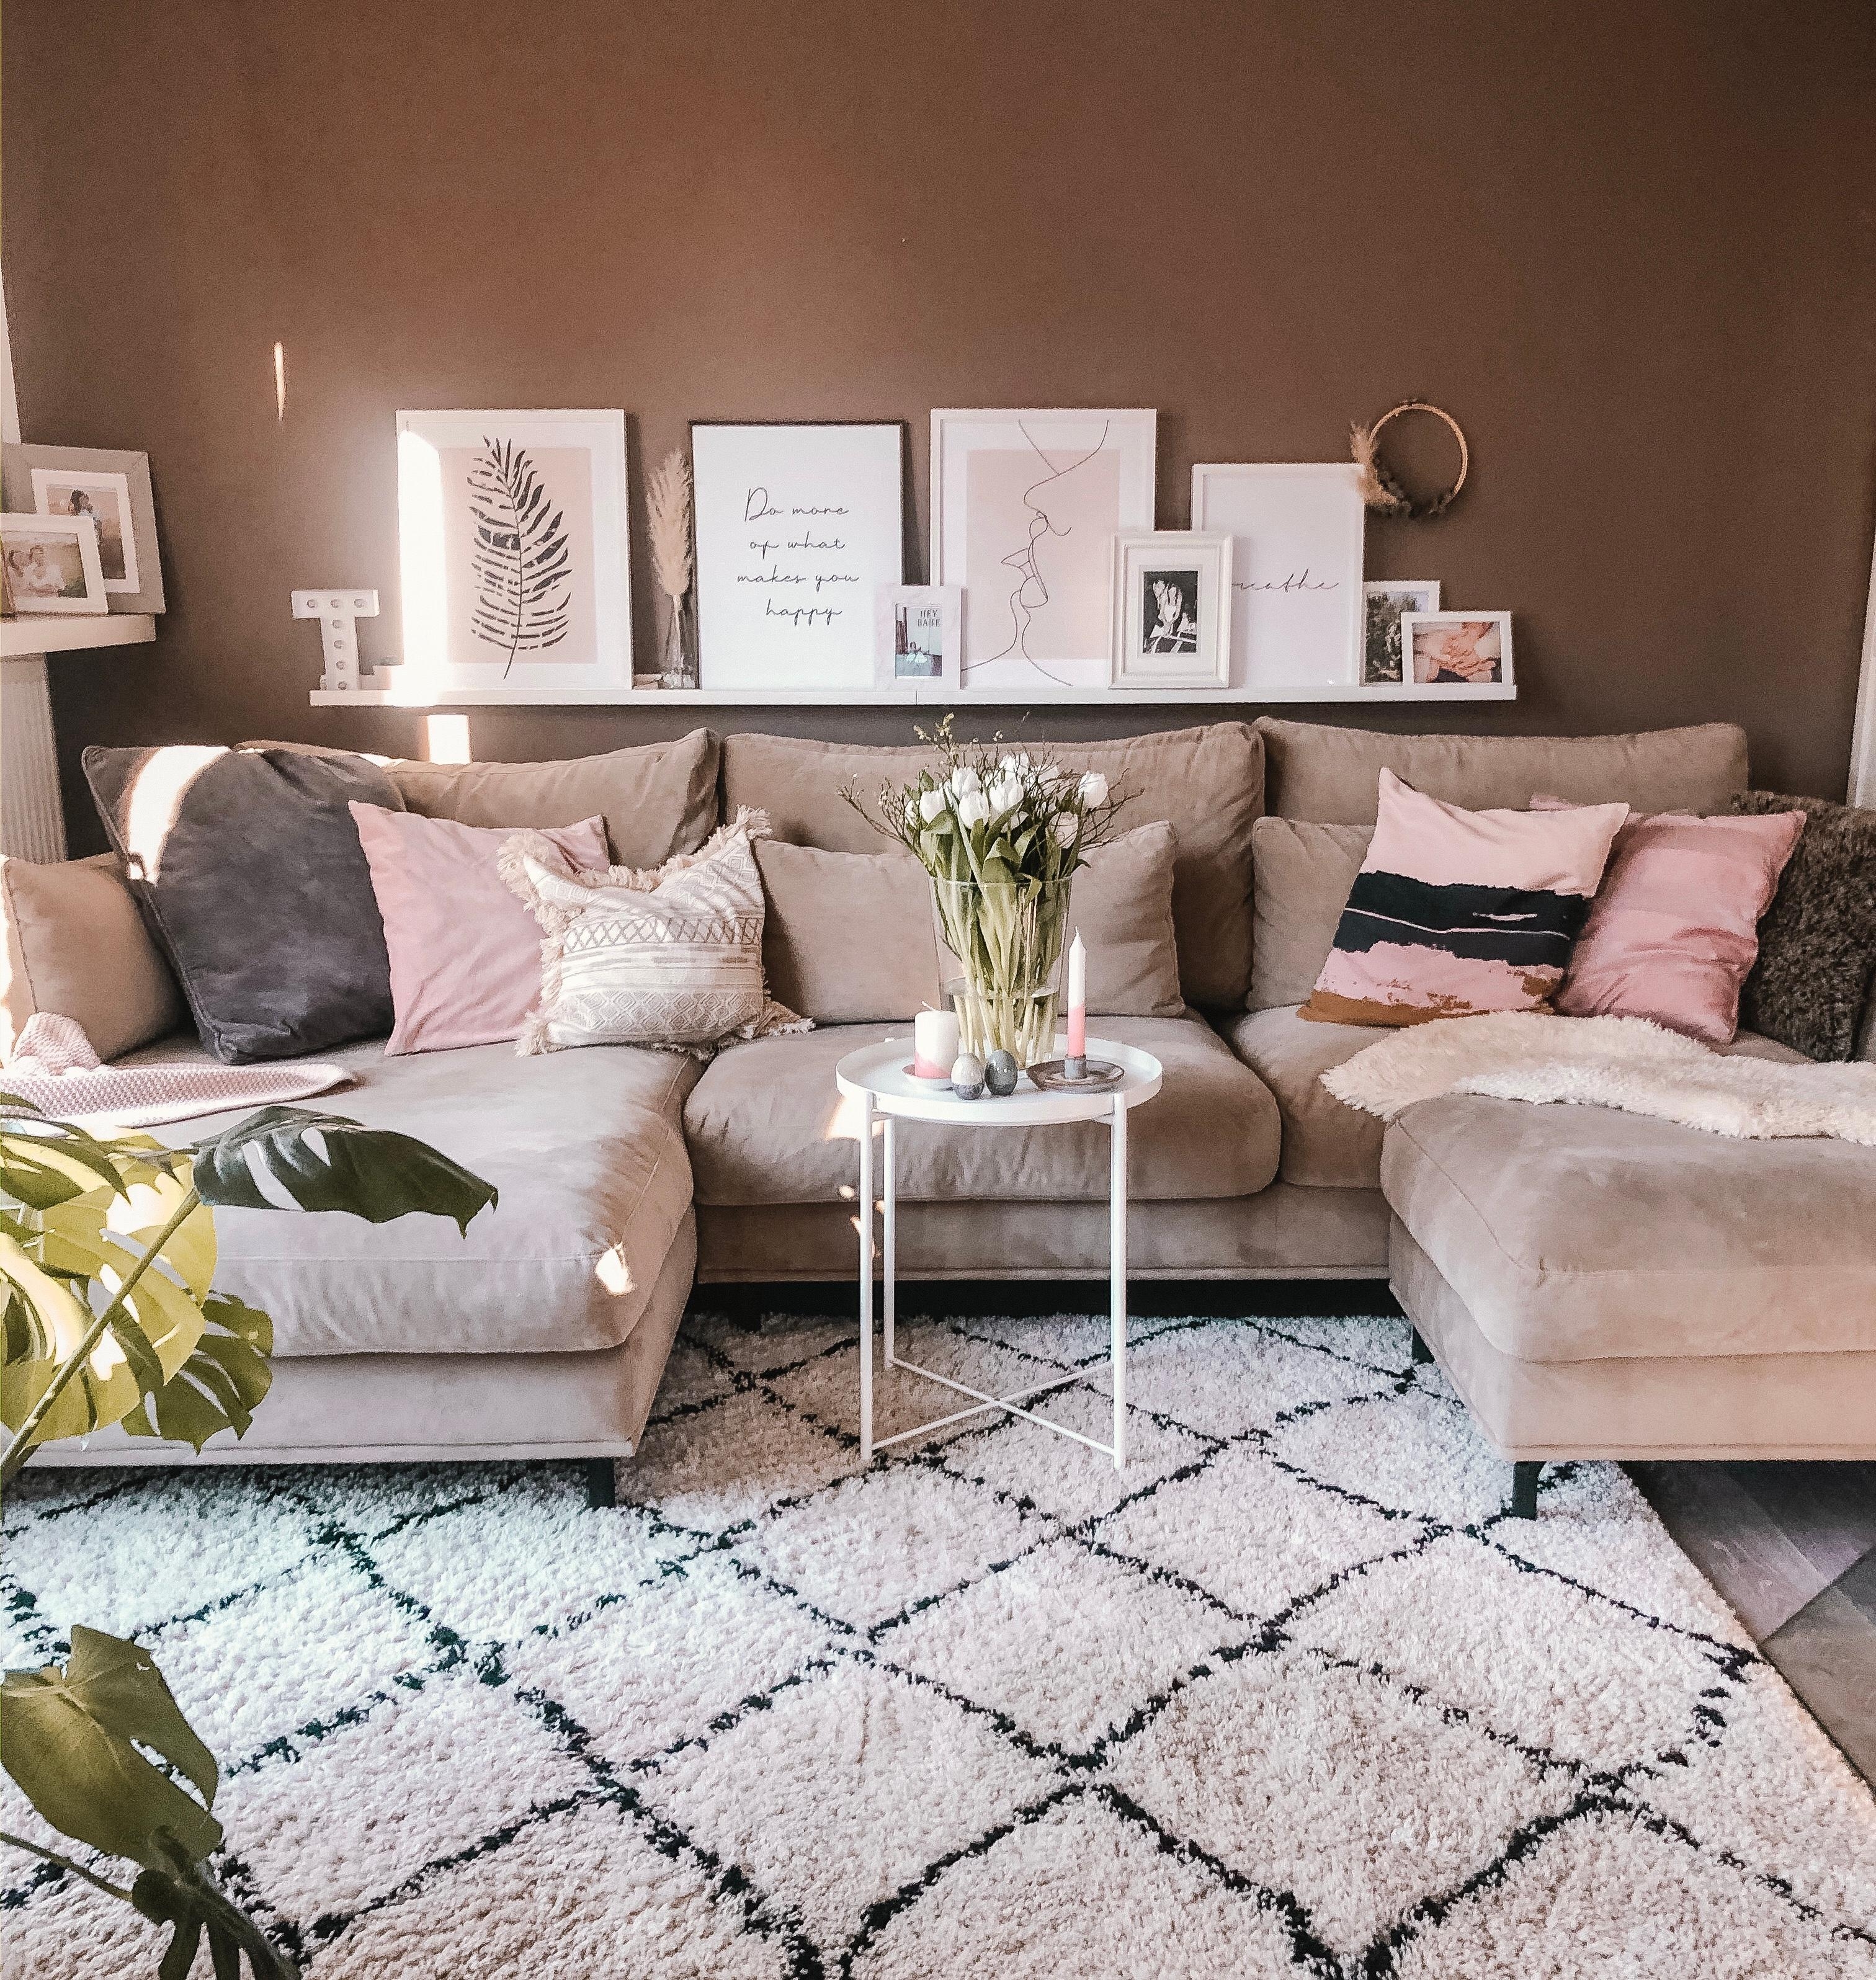 Habt ein schönes Wochenende 🌿
#couchstyle #livingroom #wandfarbe #toninton